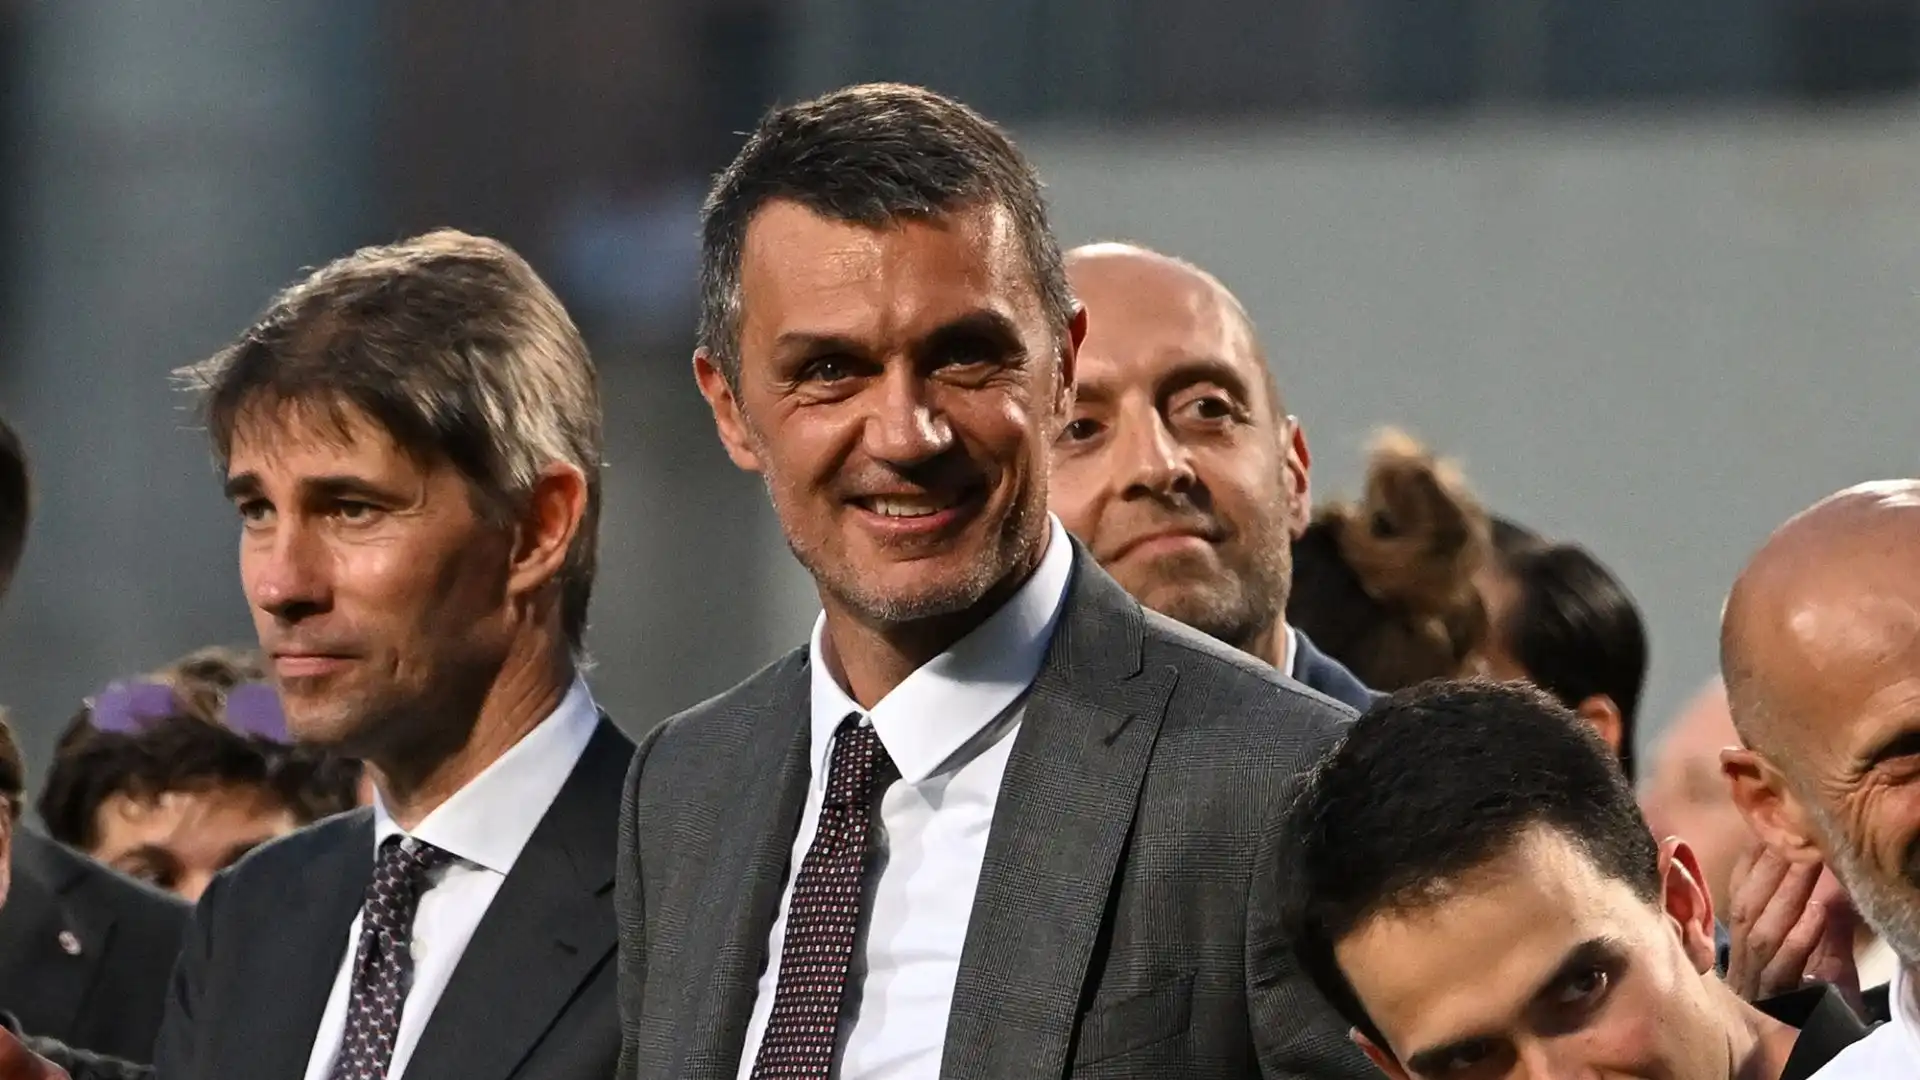 Maldini ha lasciato il Milan questa estate per disaccordi con l'attuale dirigenza